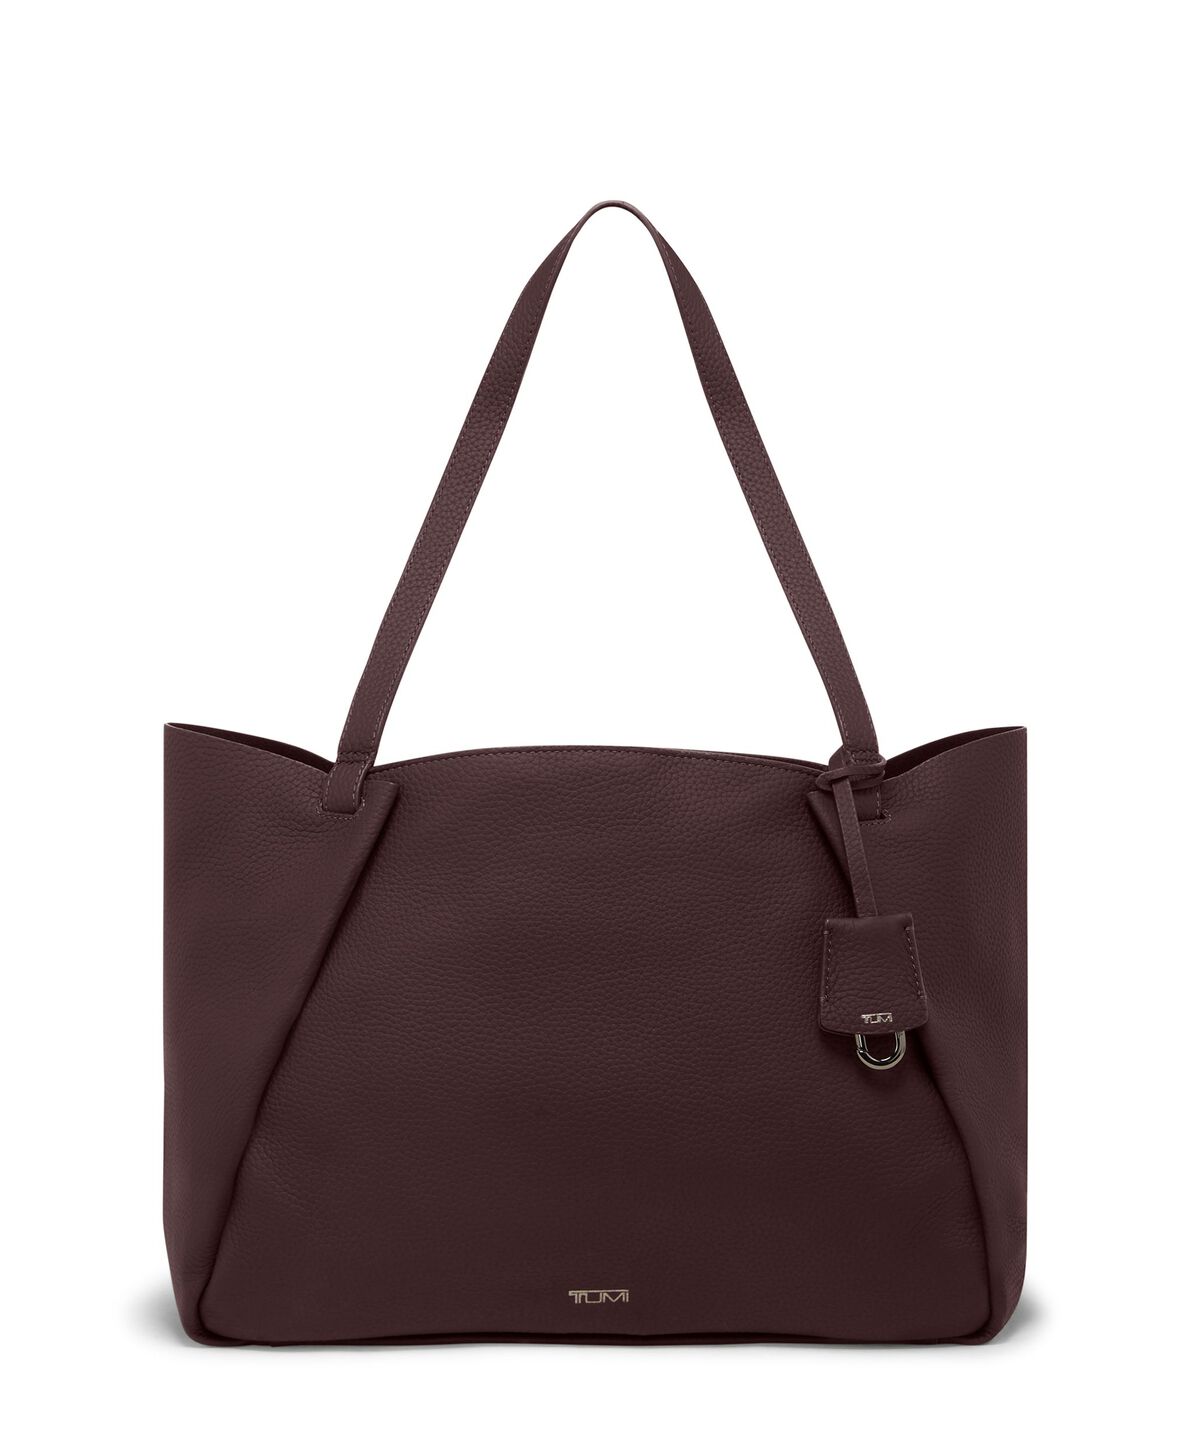 Brown Leather Bag, Women Soft Leather Bag, Big Bag, Shoulder Bag with Magnetic Closer, Over Size Bag, Brown Leather Tote Bag, Tami Bag